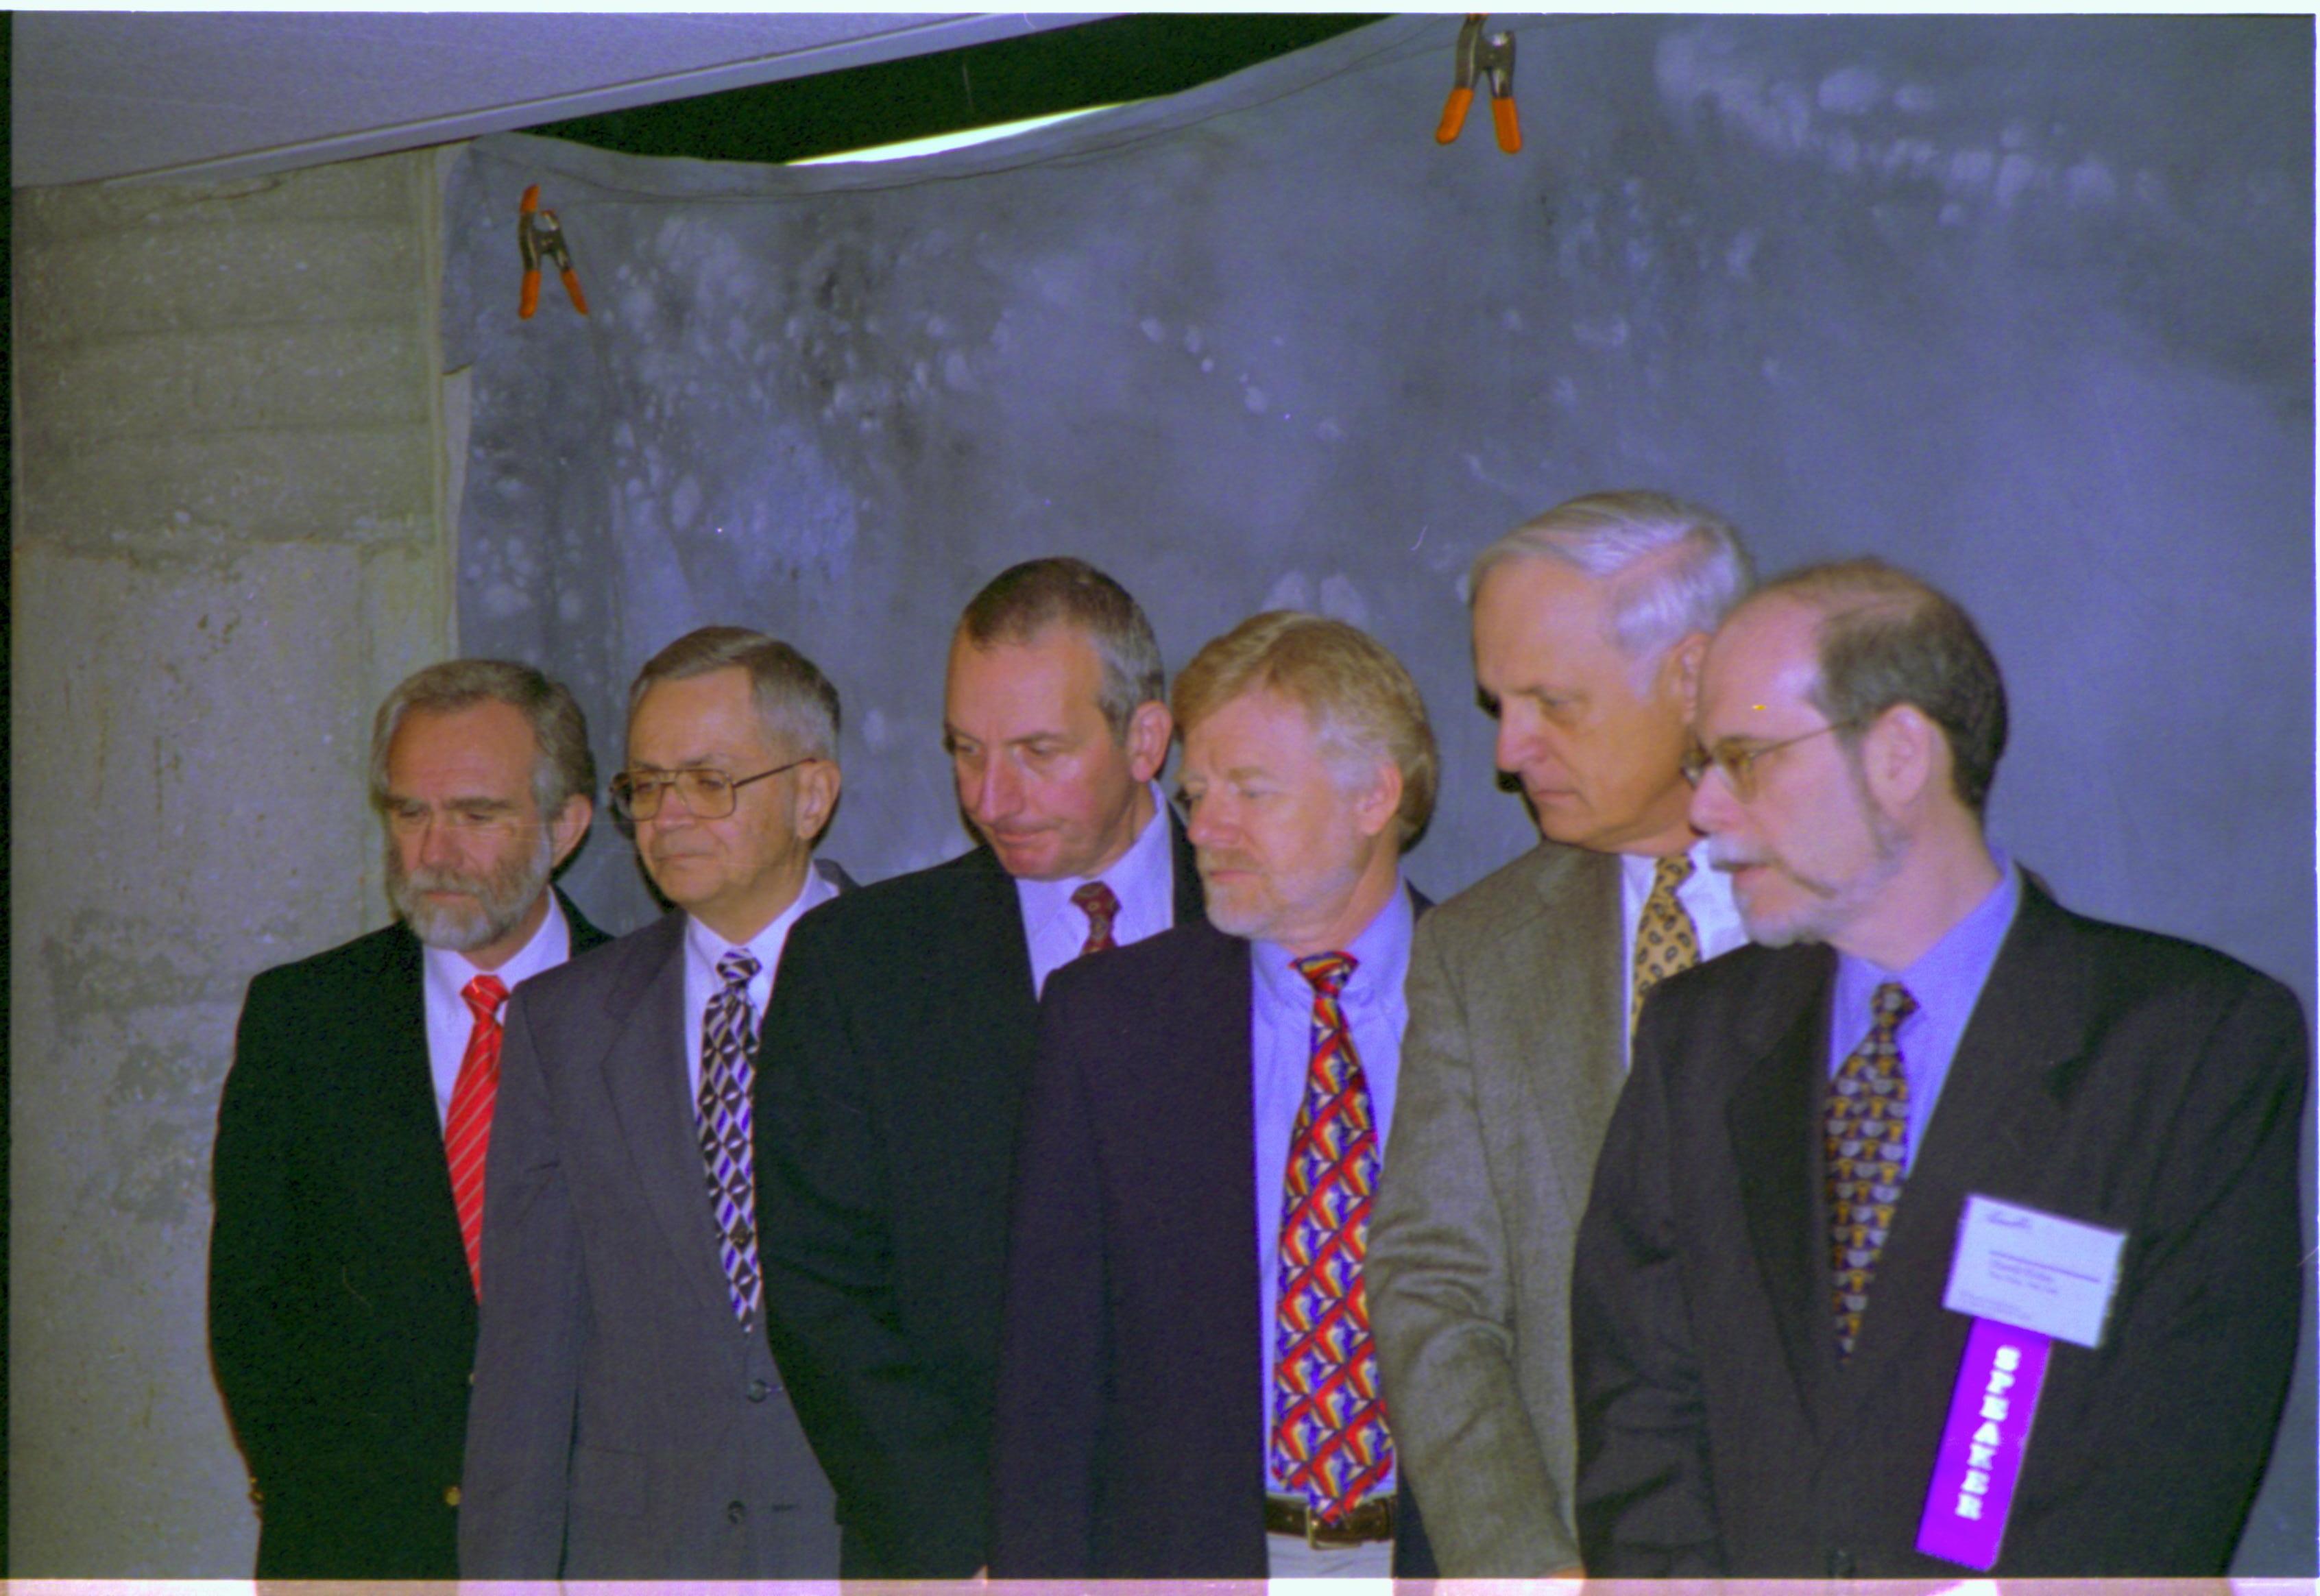 Speakers getting pictures taken 3-1997 Colloq (color); 17 Colloquium, 1997